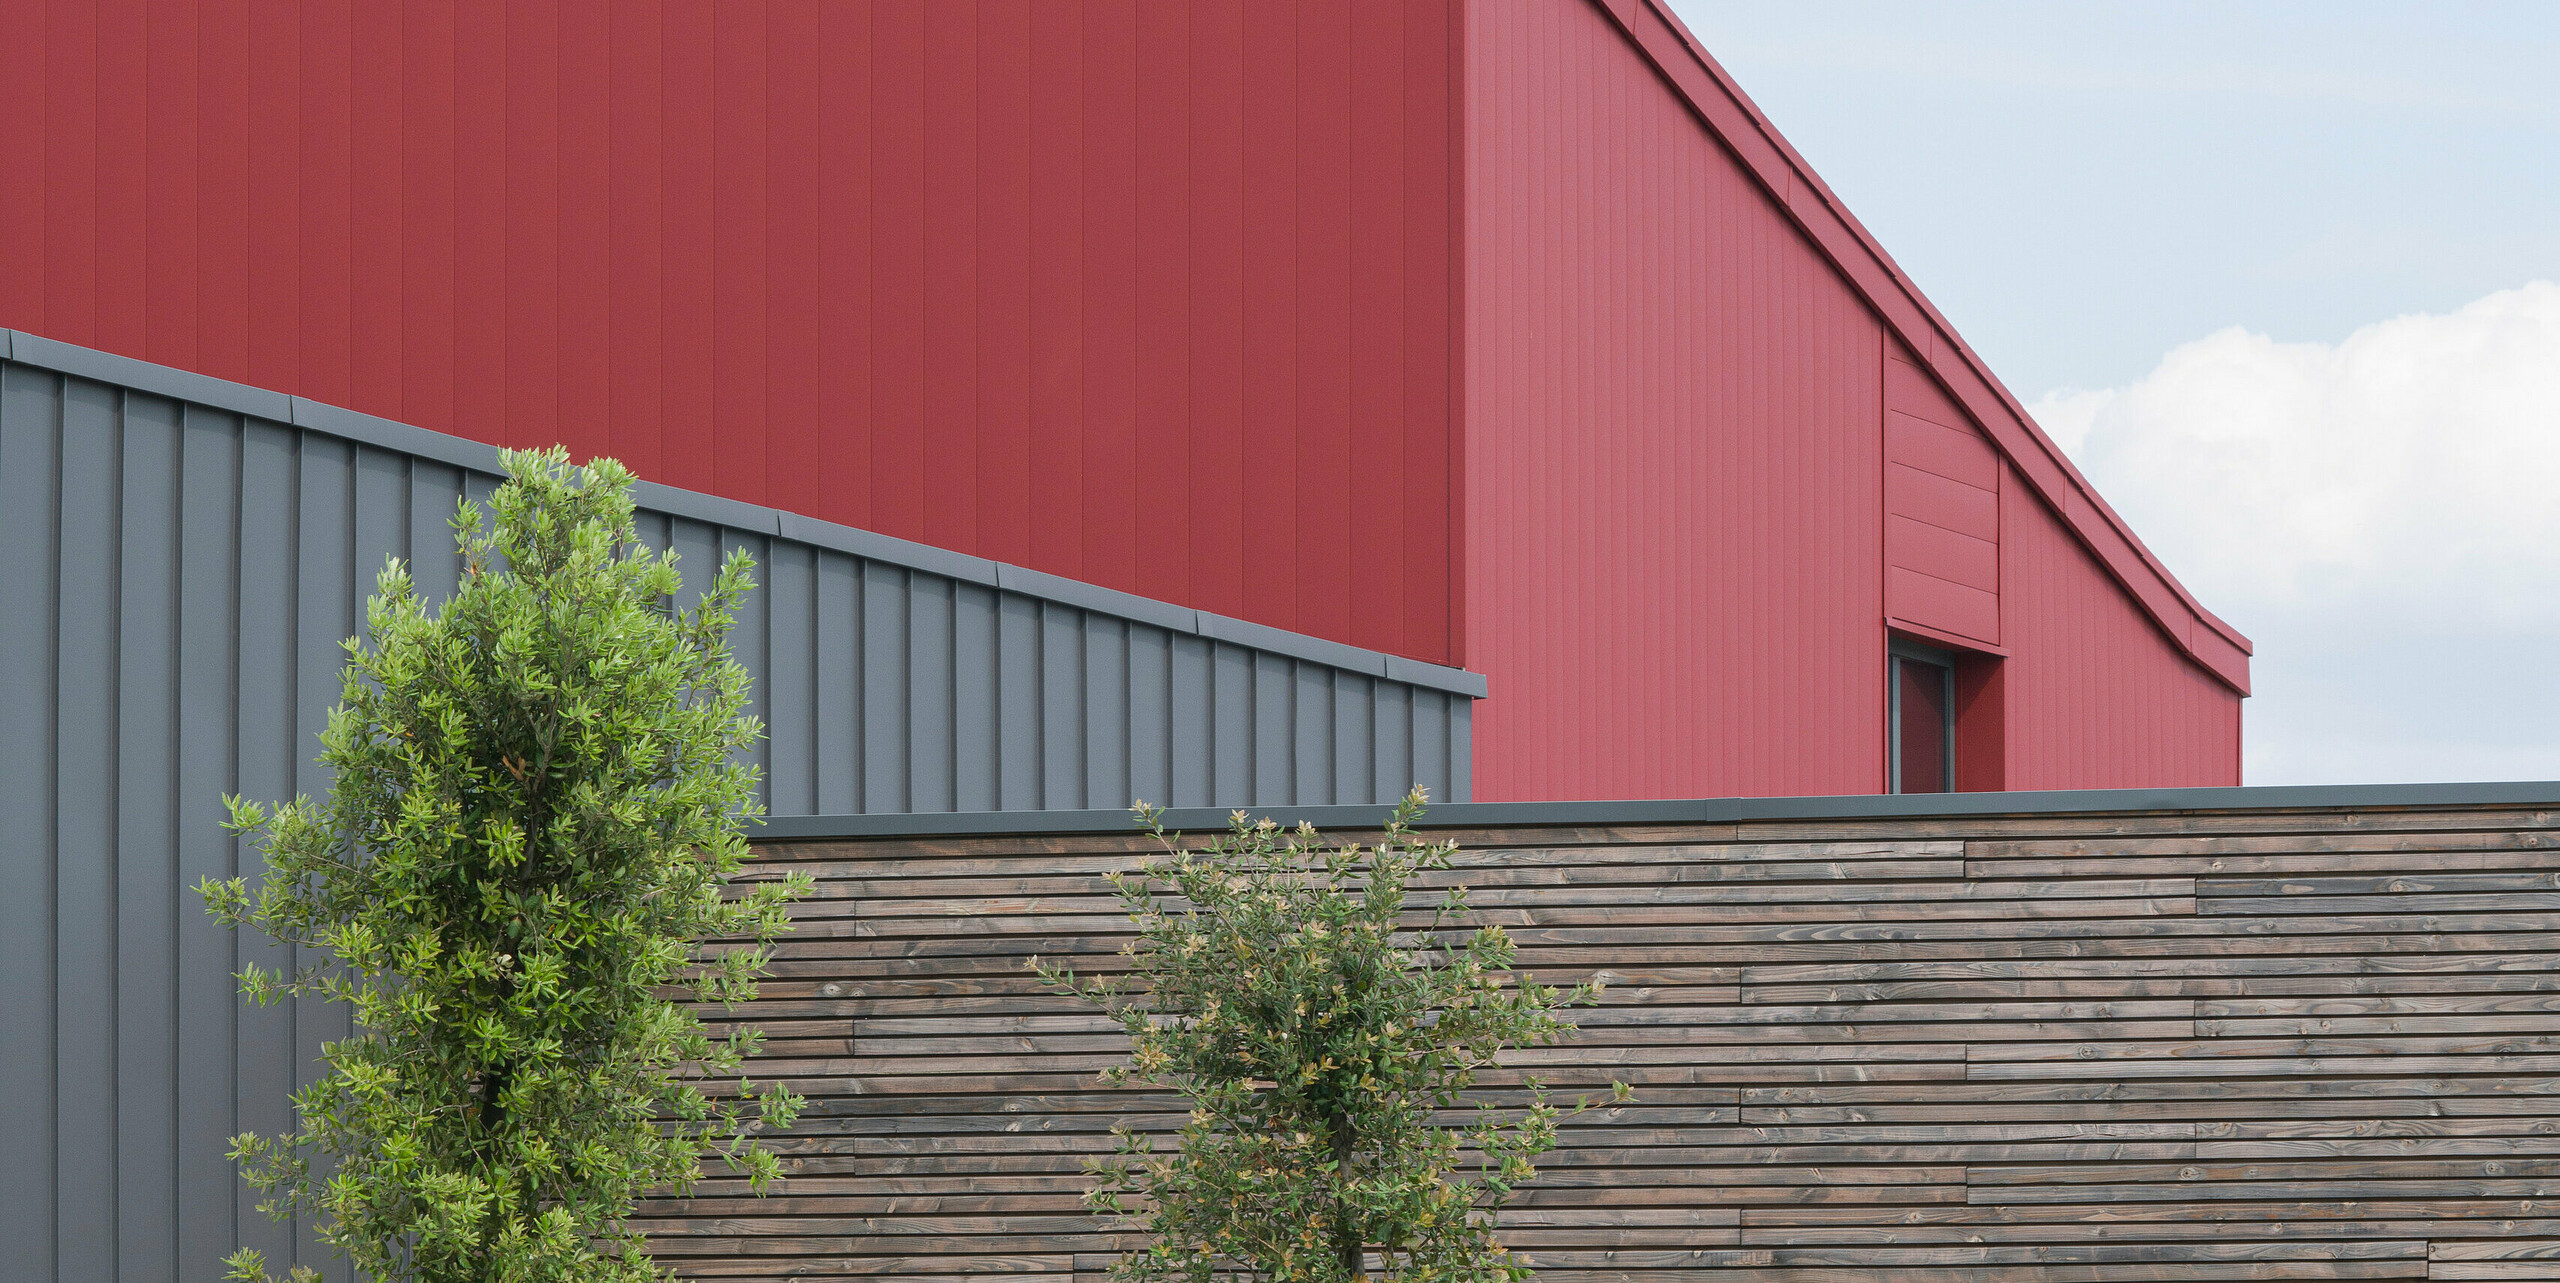 Ein modernes Geschäftshaus mit einer auffälligen roten Aluminiumfassade. Die Wahl der Farbe spricht eine klare architektonische Sprache. Die strukturierte, graue Aluminiumverkleidung bildet einen subtilen Kontrast zum markanten Rot. Die langlebige PREFALZ Aluminiumverkleidung an Fassade und Dach bietet idealen Schutz gegen alle Witterungsbedingungen. Die ergänzende Naturholzverkleidung vermittelt Wärme und Natürlichkeit. Vor dem Gebäude sind junge Bäume zu sehen, die sorgfältig mit Stützpfosten gesichert sind. Ein gut gepflegtes Blumenbeet sorgt für zusätzliche Farbe und Leben. Eine Ladestation für Elektroautos im Vordergrund zeigt das Engagement für nachhaltige Energielösungen.